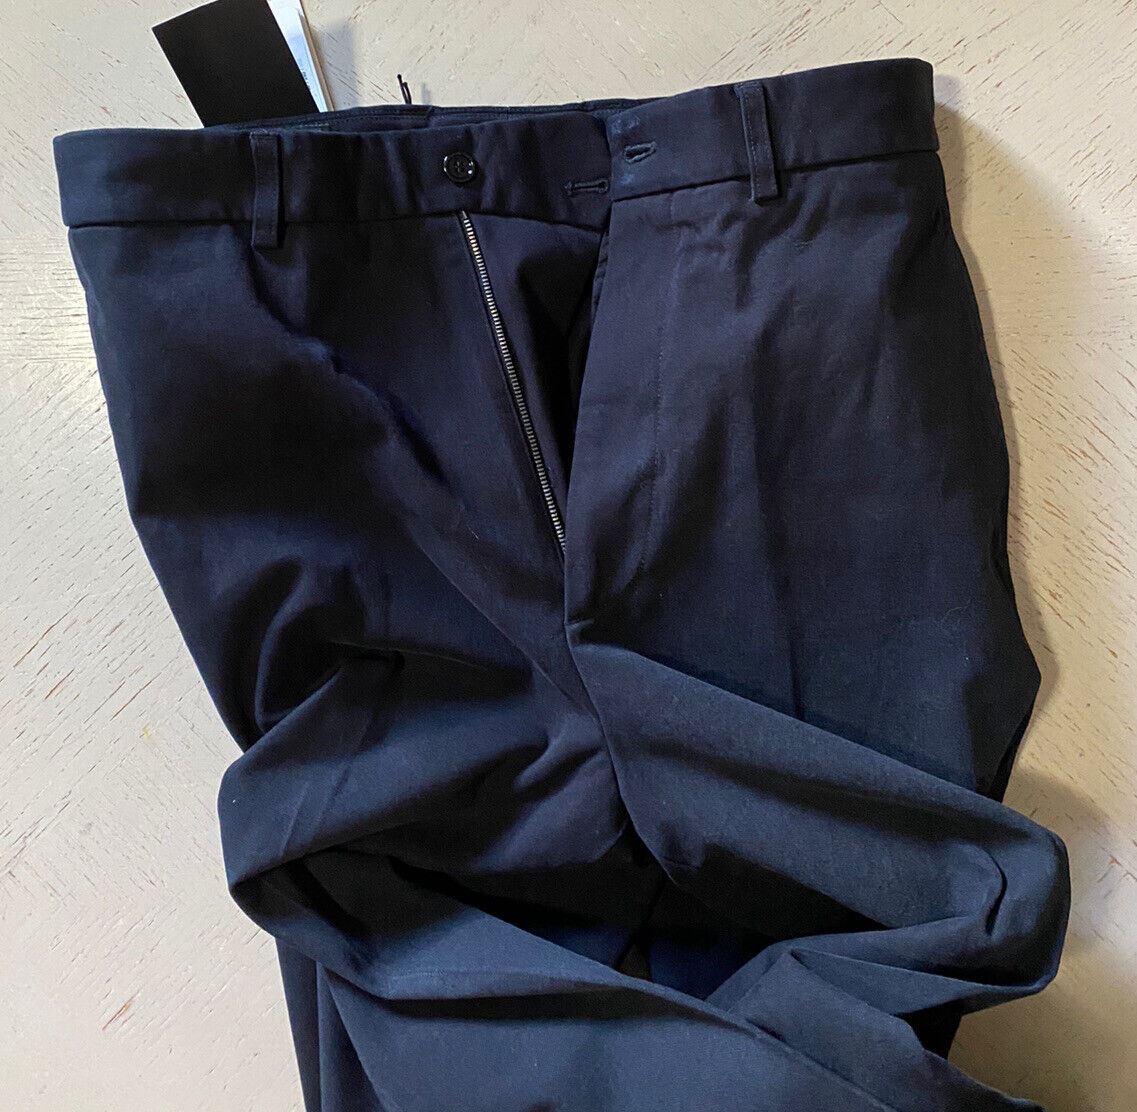 Neu mit Etikett: 1150 $ Gucci Herren-Baumwollhose, Farbe Marineblau, Größe 28, US-Italien